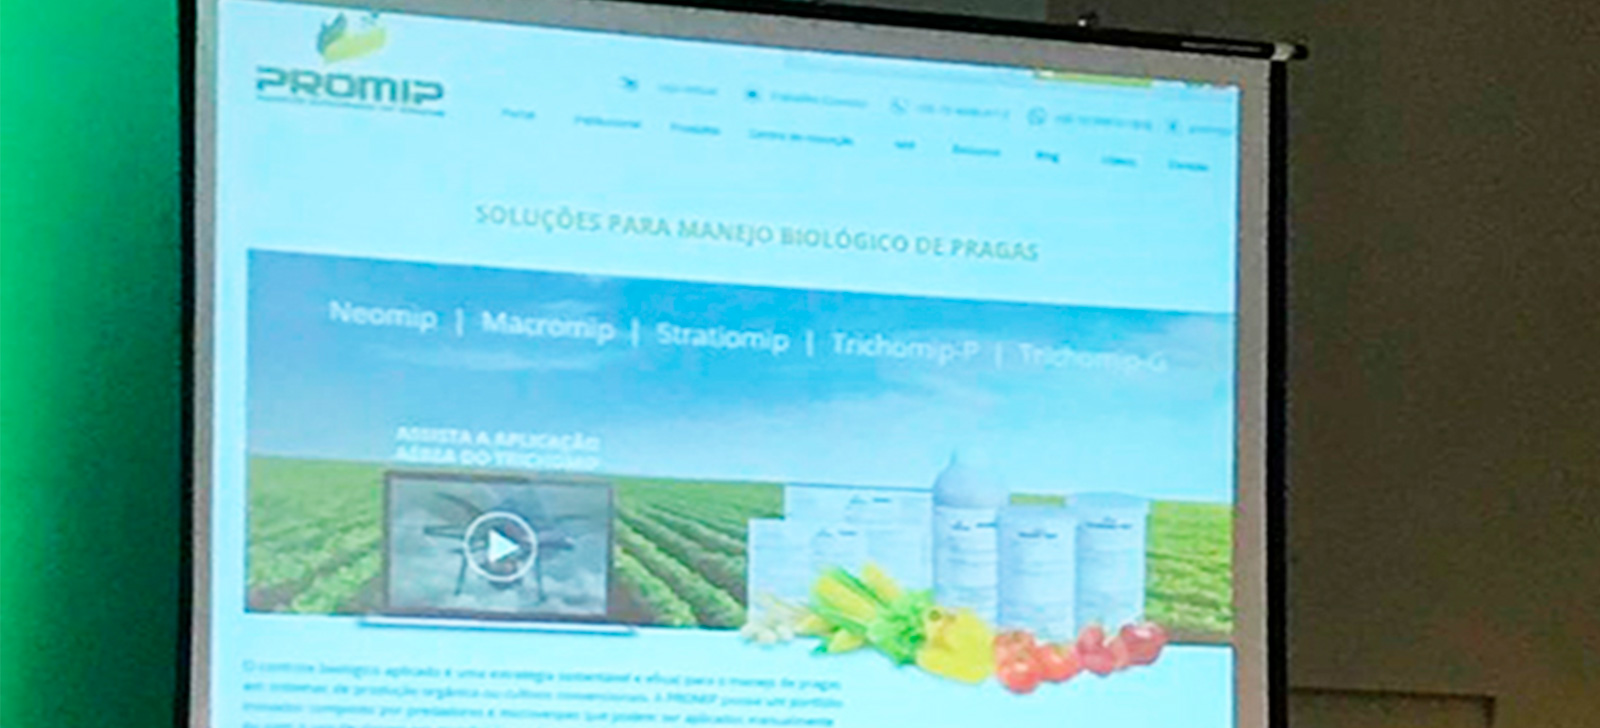 promip manejo integrado de pragas controle biologico promip citada no congresso brasileiro de nematologia (1)